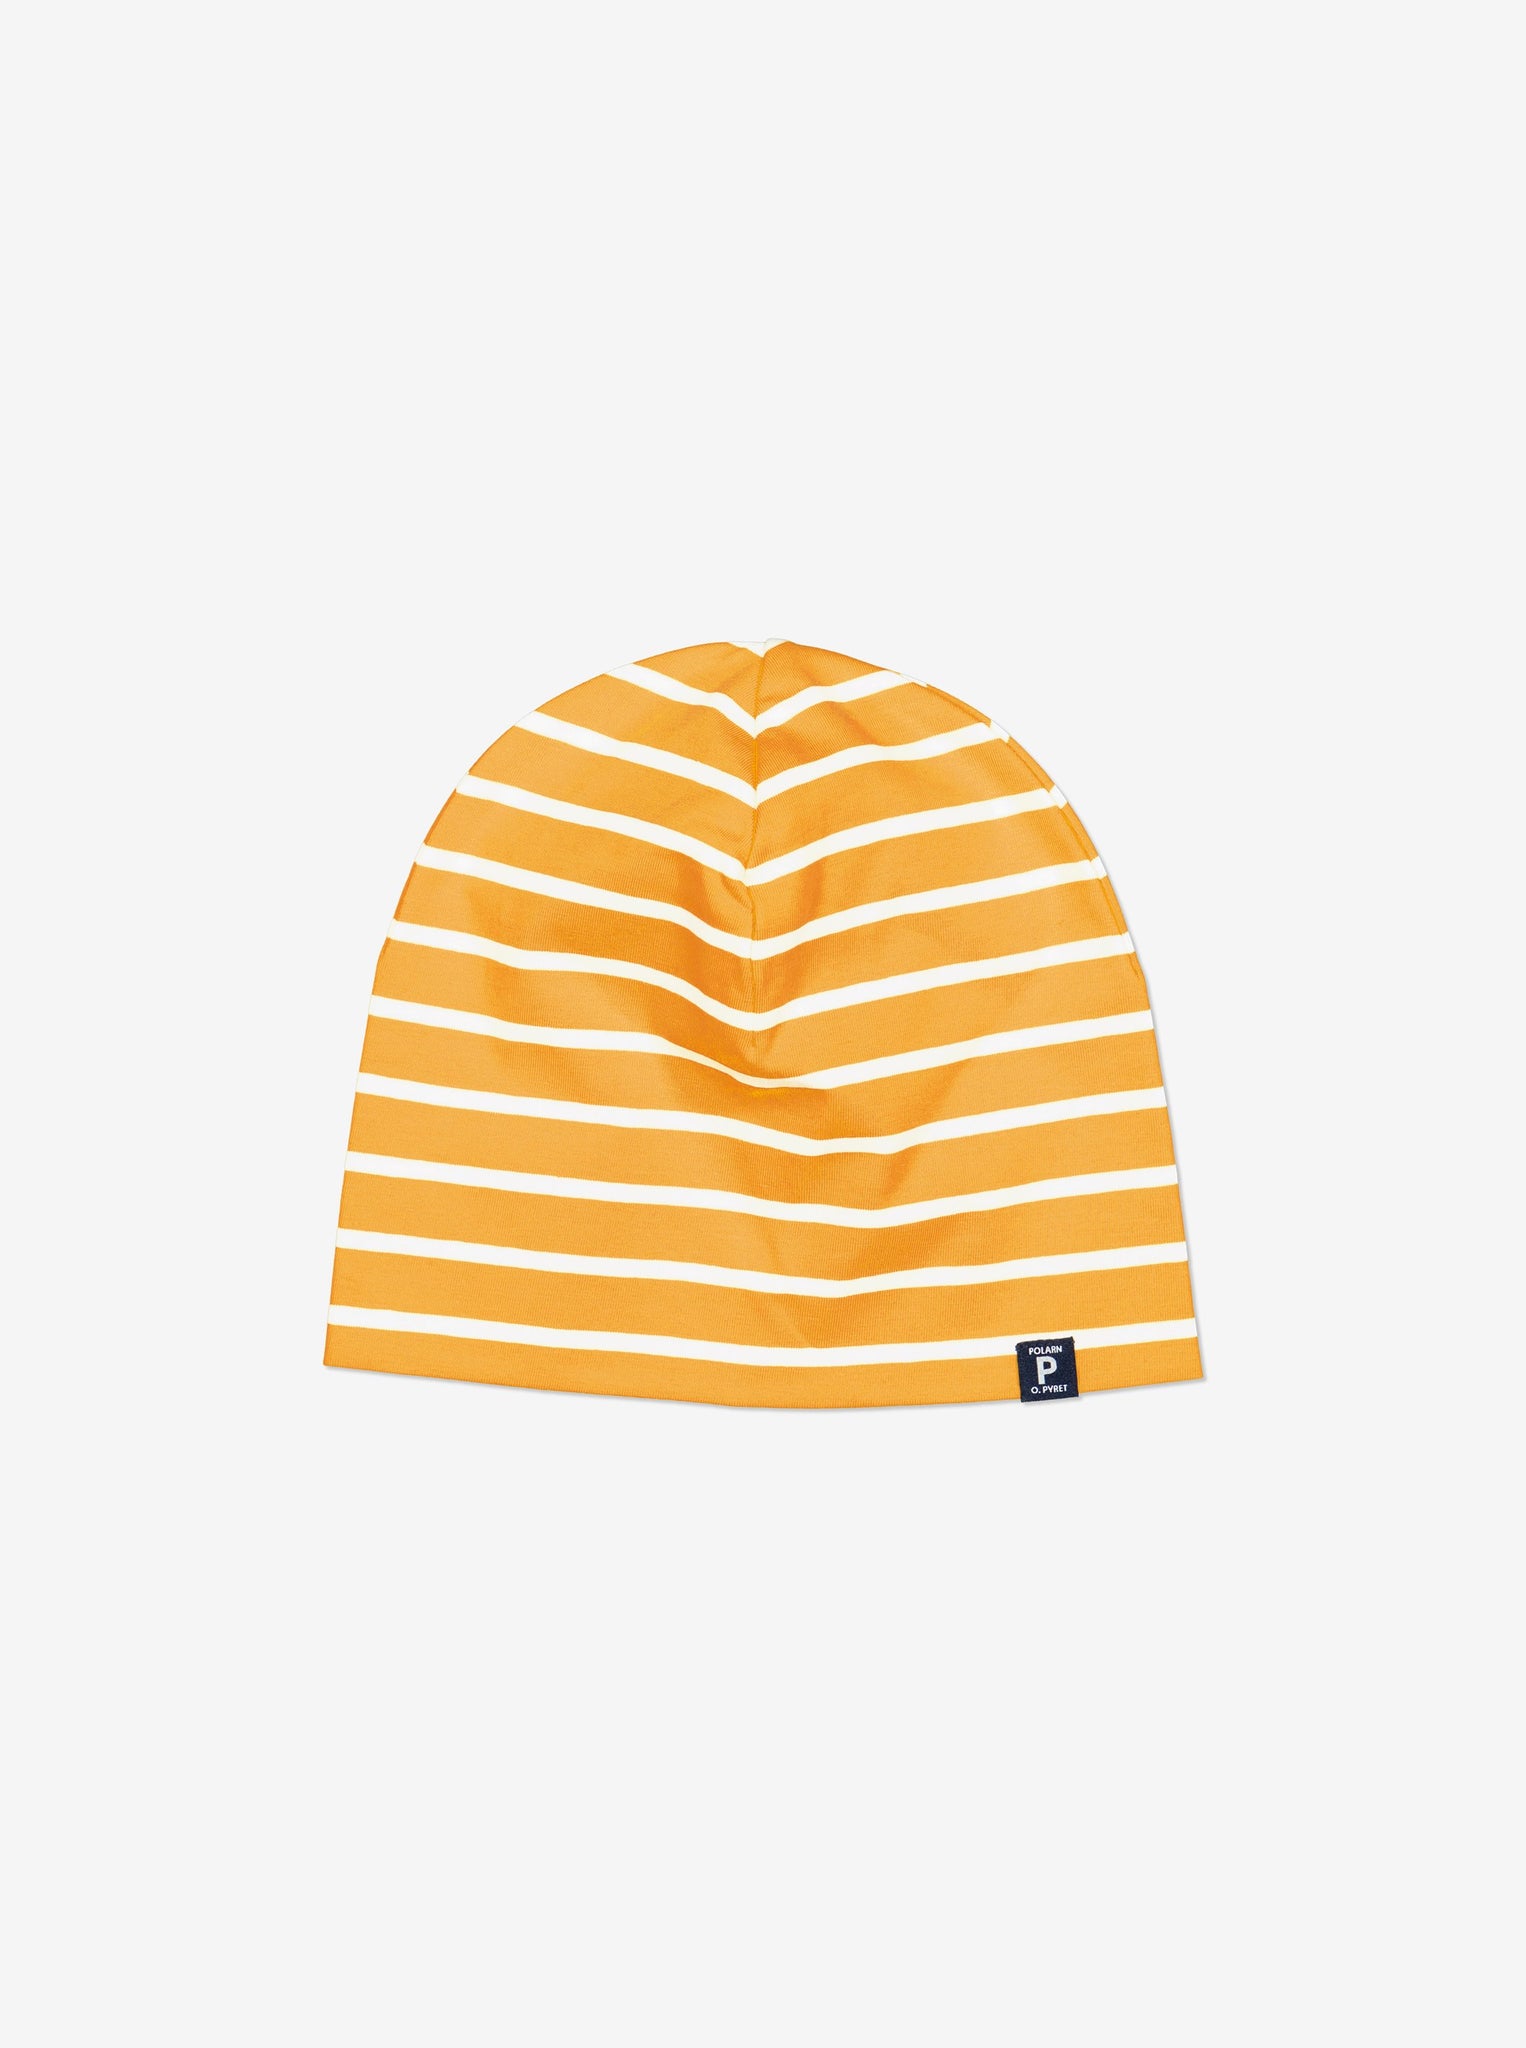 Striped Yellow Kids Beanie Hat from Polarn O. Pyret Kidswear. Warm kids beanie